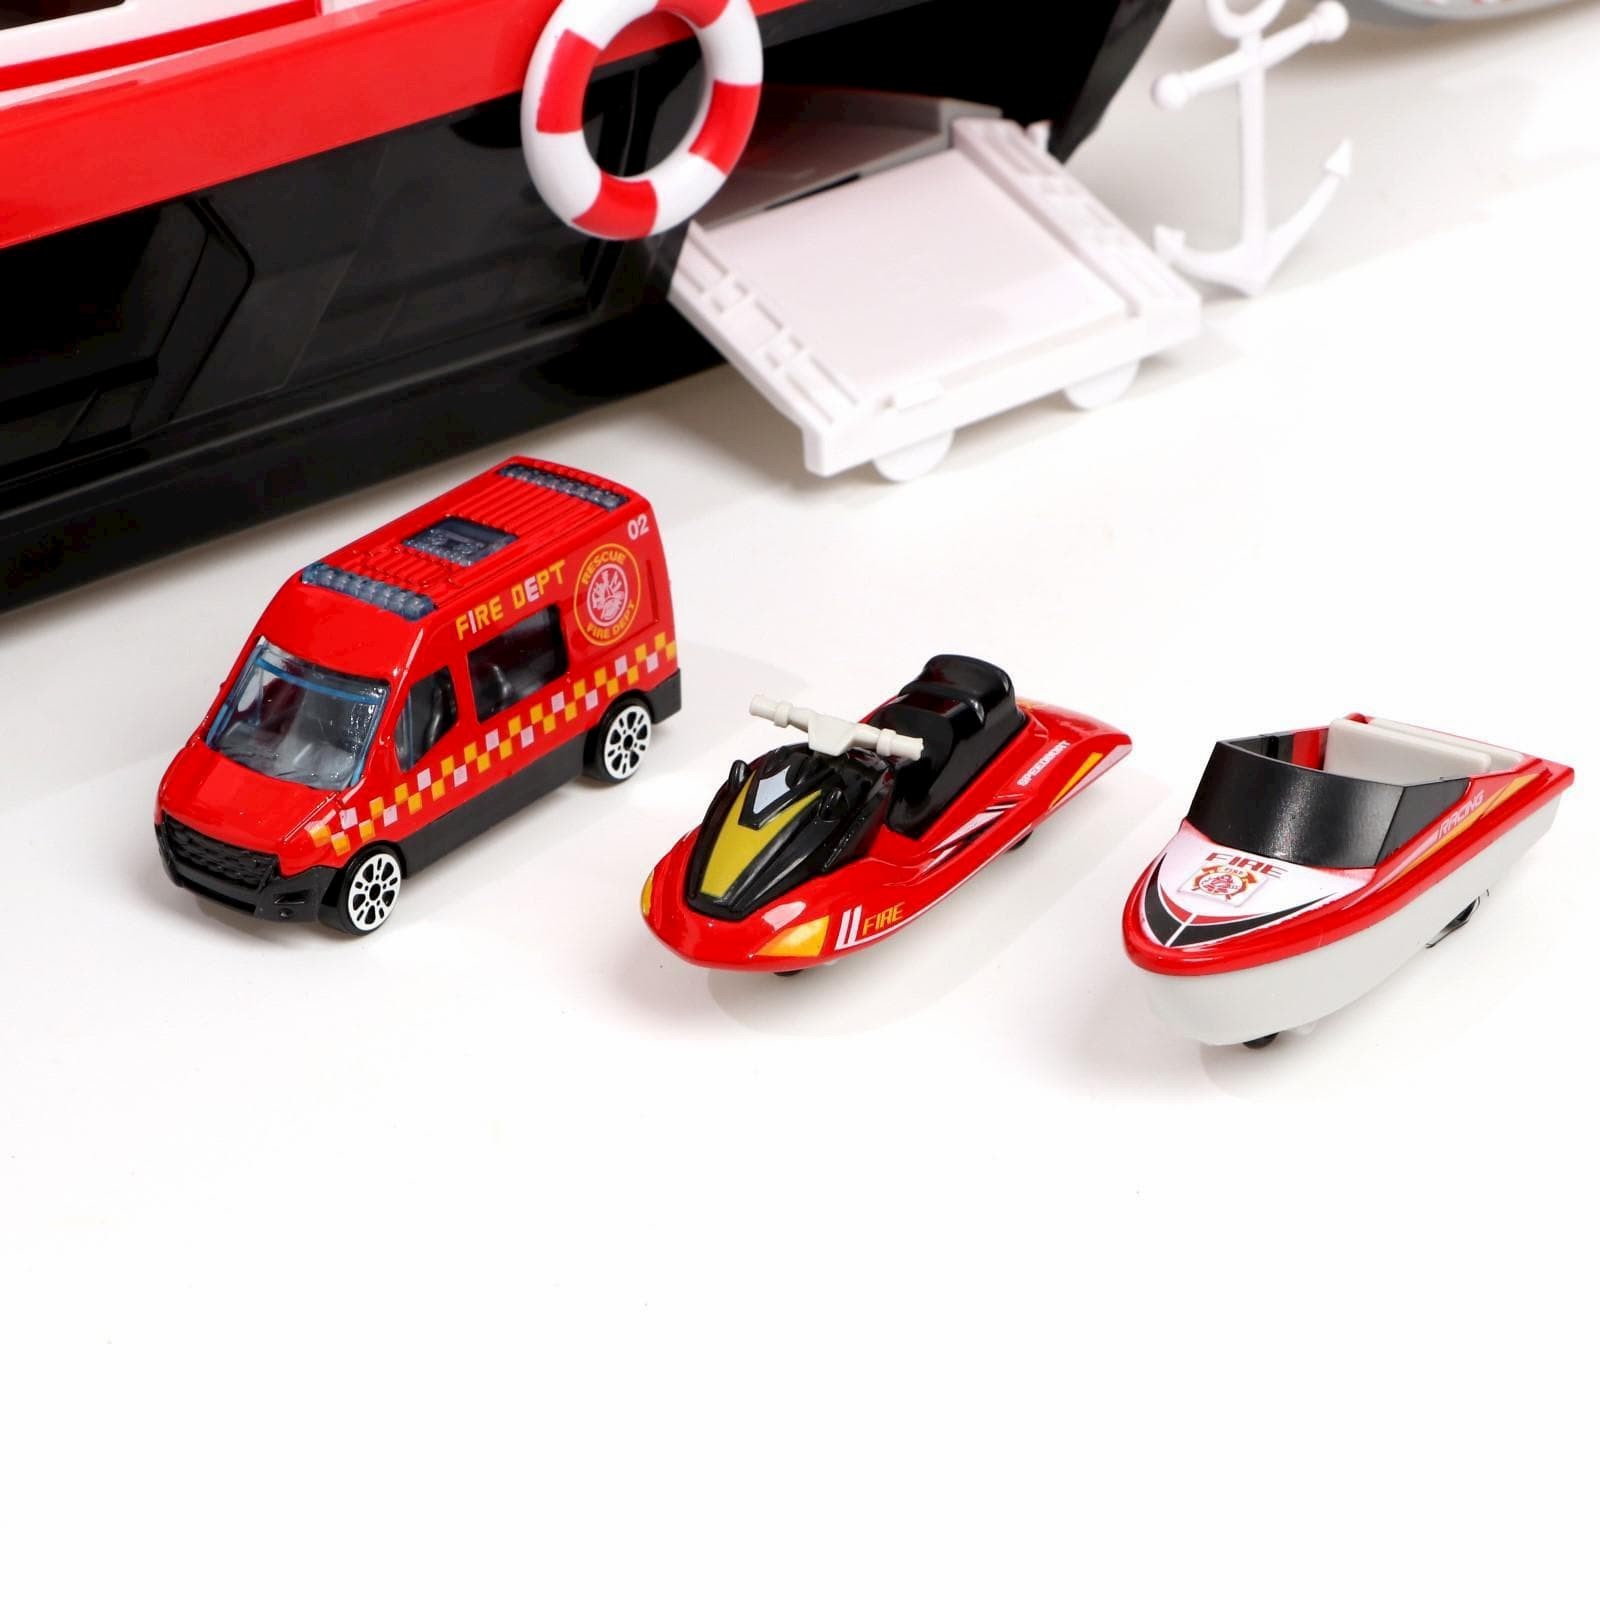 Парковка «Пожарный катер» 660-A247, с машинками, световые и звуковые эффекты